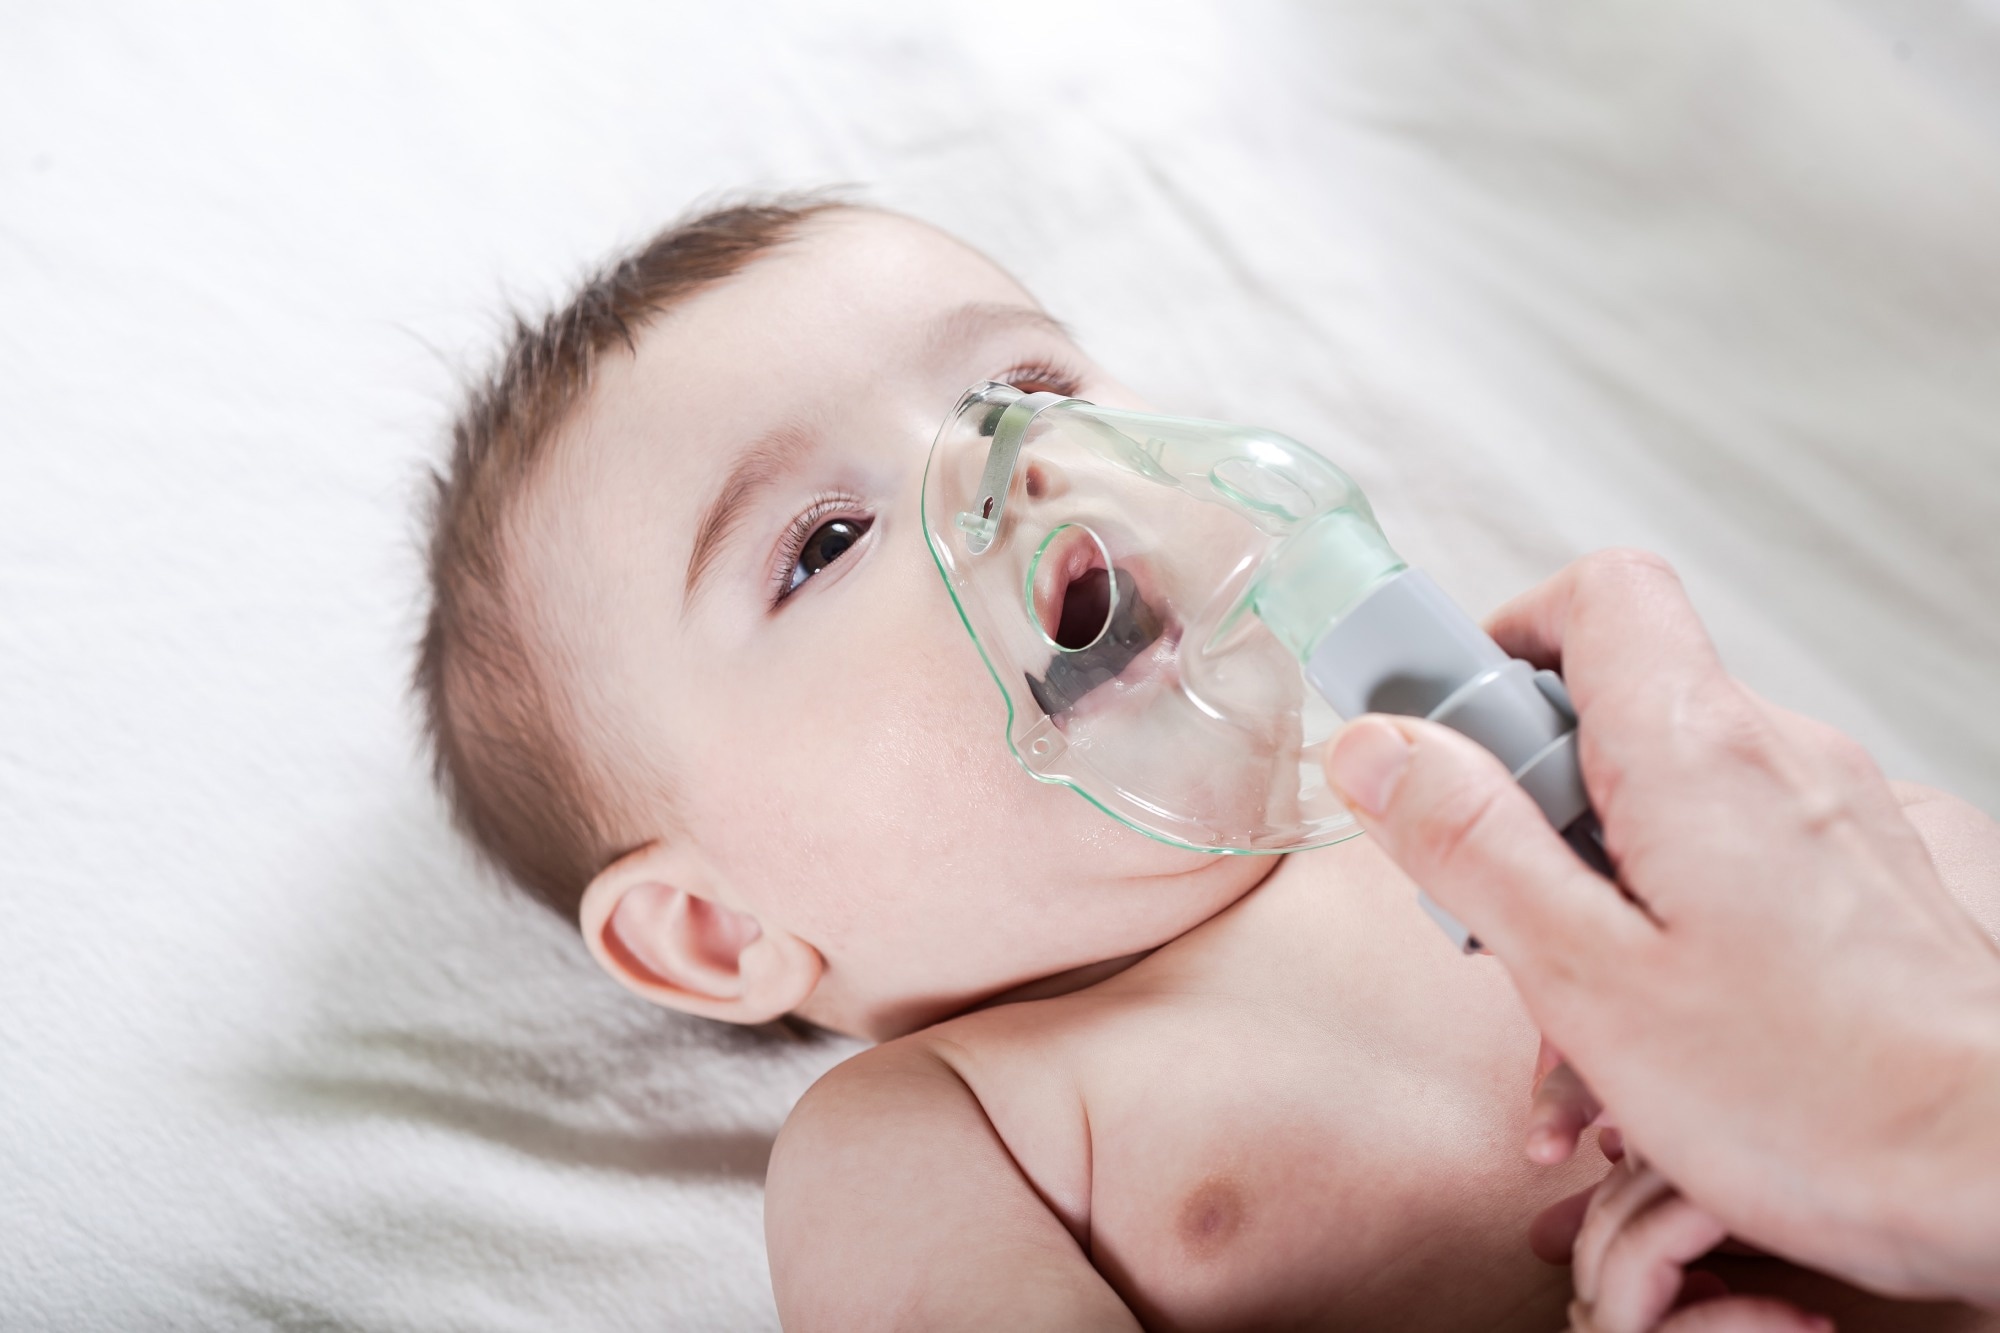 مطالعه: عفونت ویروس سنسیشیال تنفسی در دوران نوزادی و آسم در دوران کودکی در ایالات متحده آمریکا (INSPIRE): یک مطالعه کوهورت تولد آینده نگر مبتنی بر جمعیت.  اعتبار تصویر: الکساندر ایشچنکو / Shutterstock.com